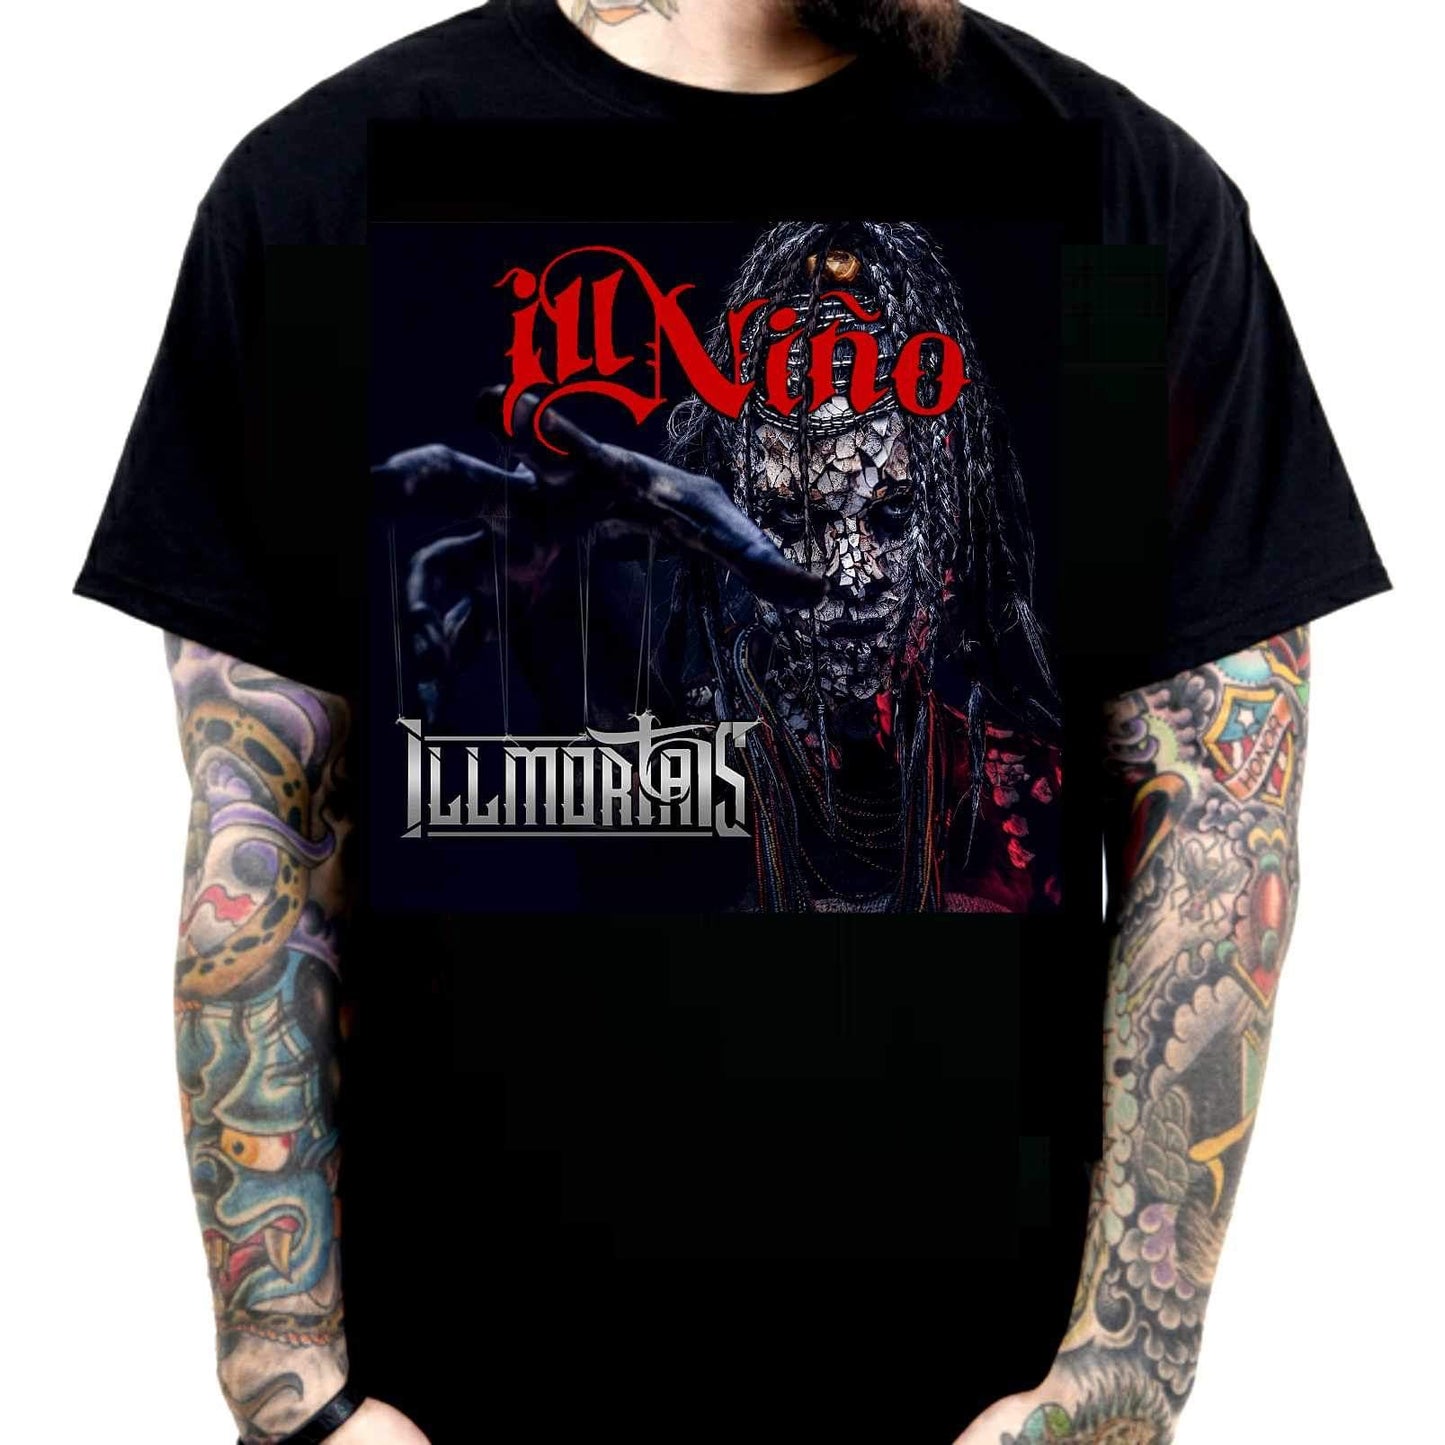 ILL Nino - Illmortals unisex t shirt